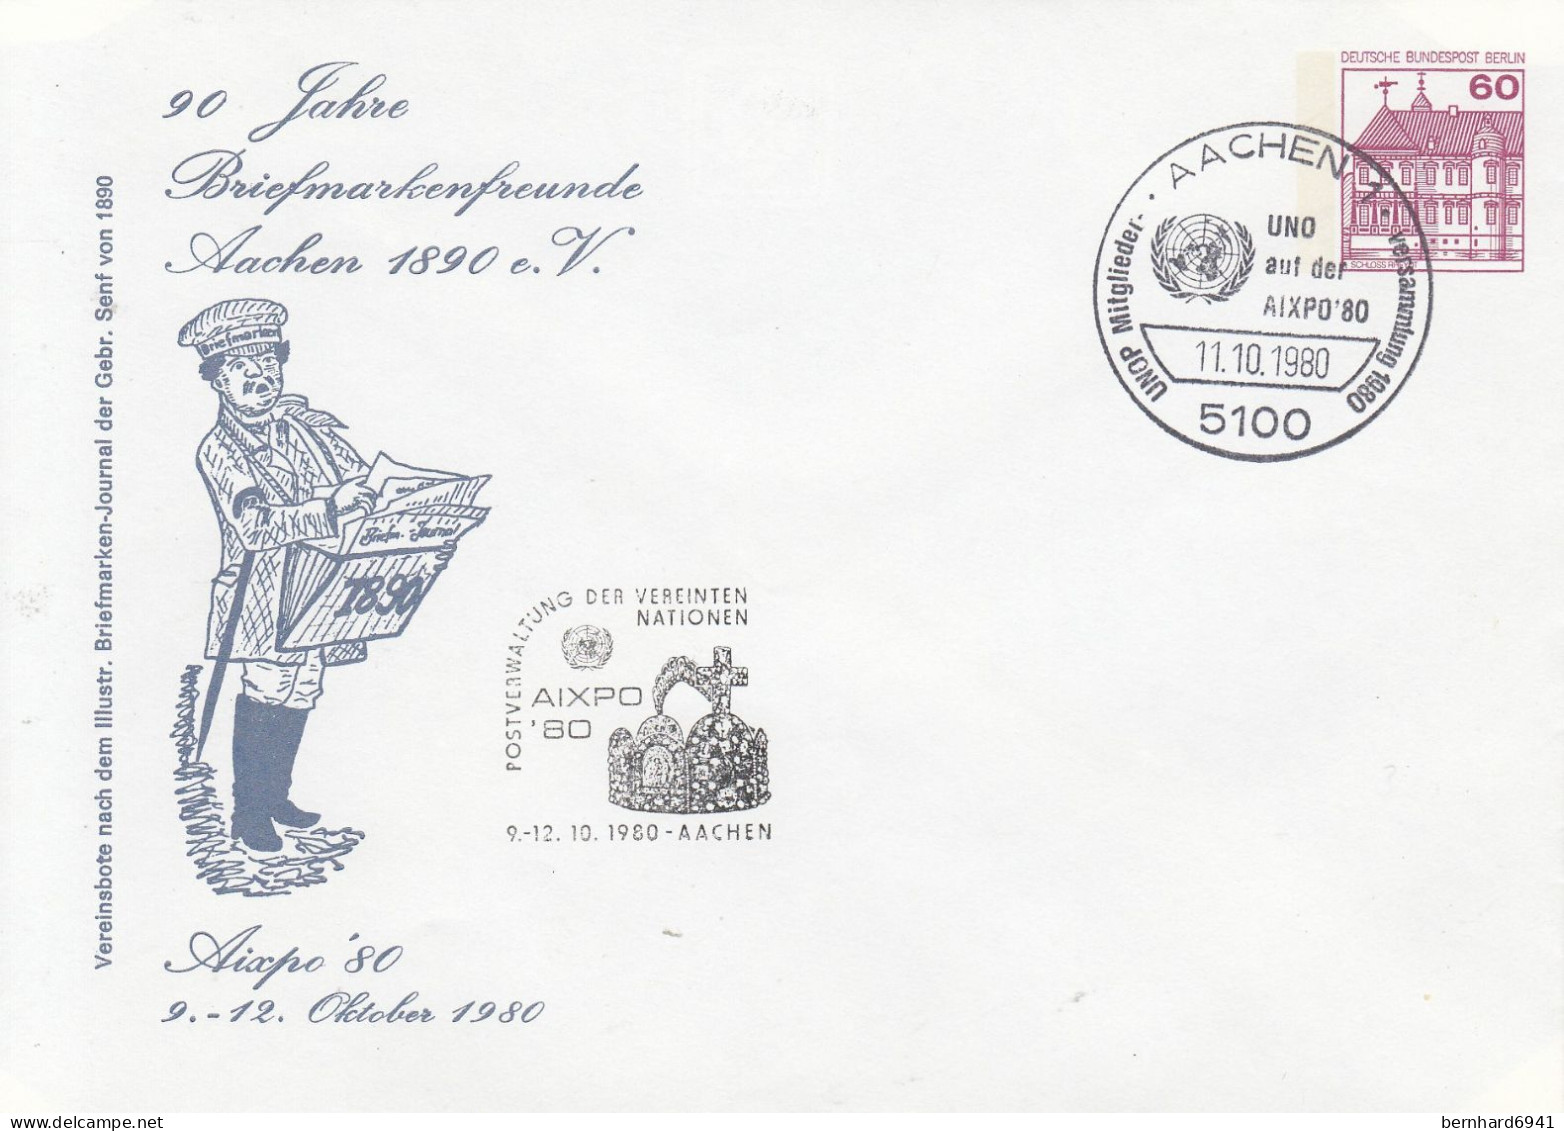 B PU 75/8 90 Jahre Briefmarkenfreunde Aachen 1890 E.V. -Aixpo`80 9.-12. Oktober 1980, Aachen 1 - Sobres Privados - Usados